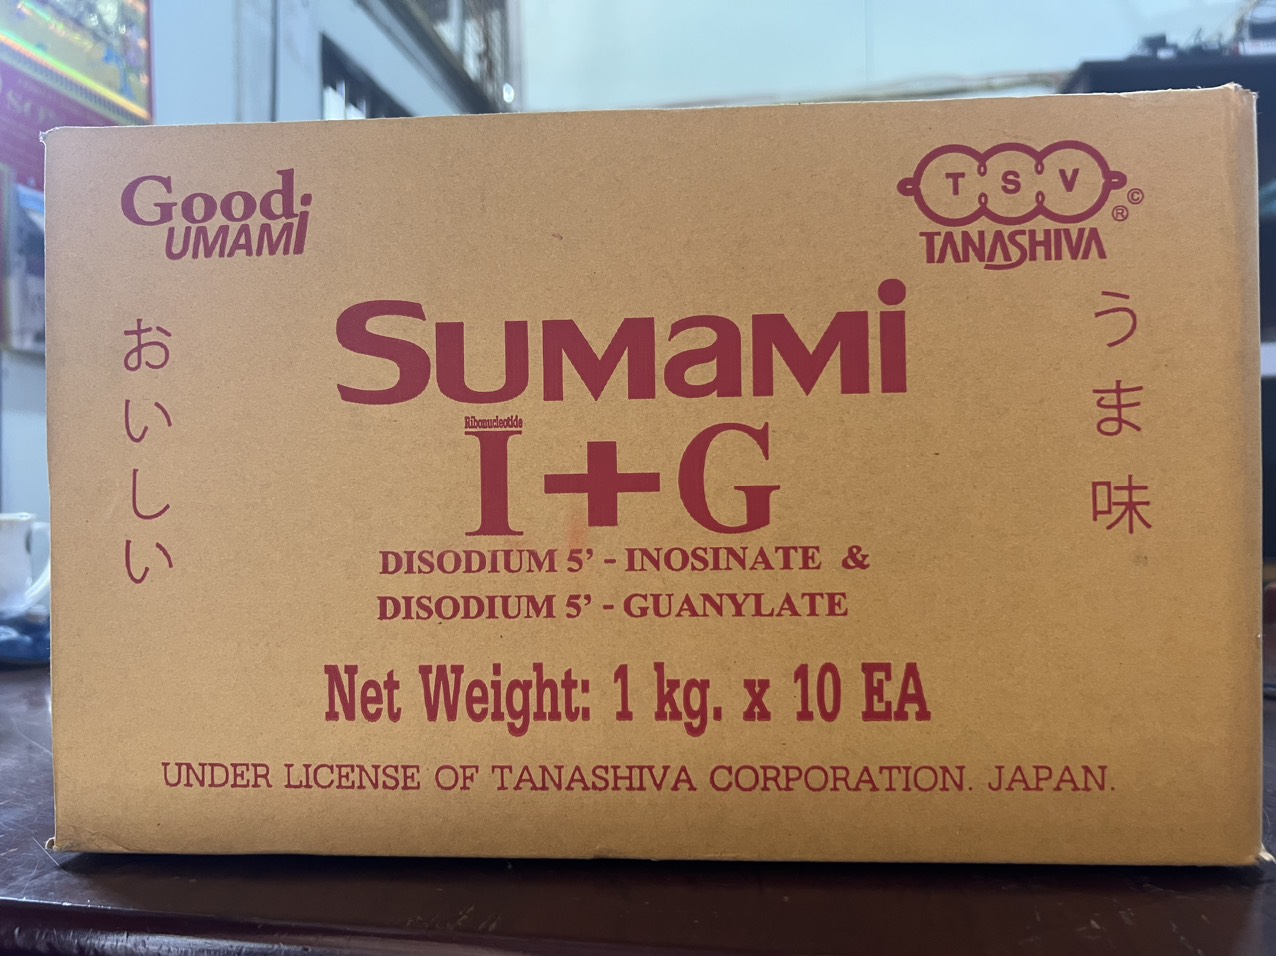 I+G Sumami